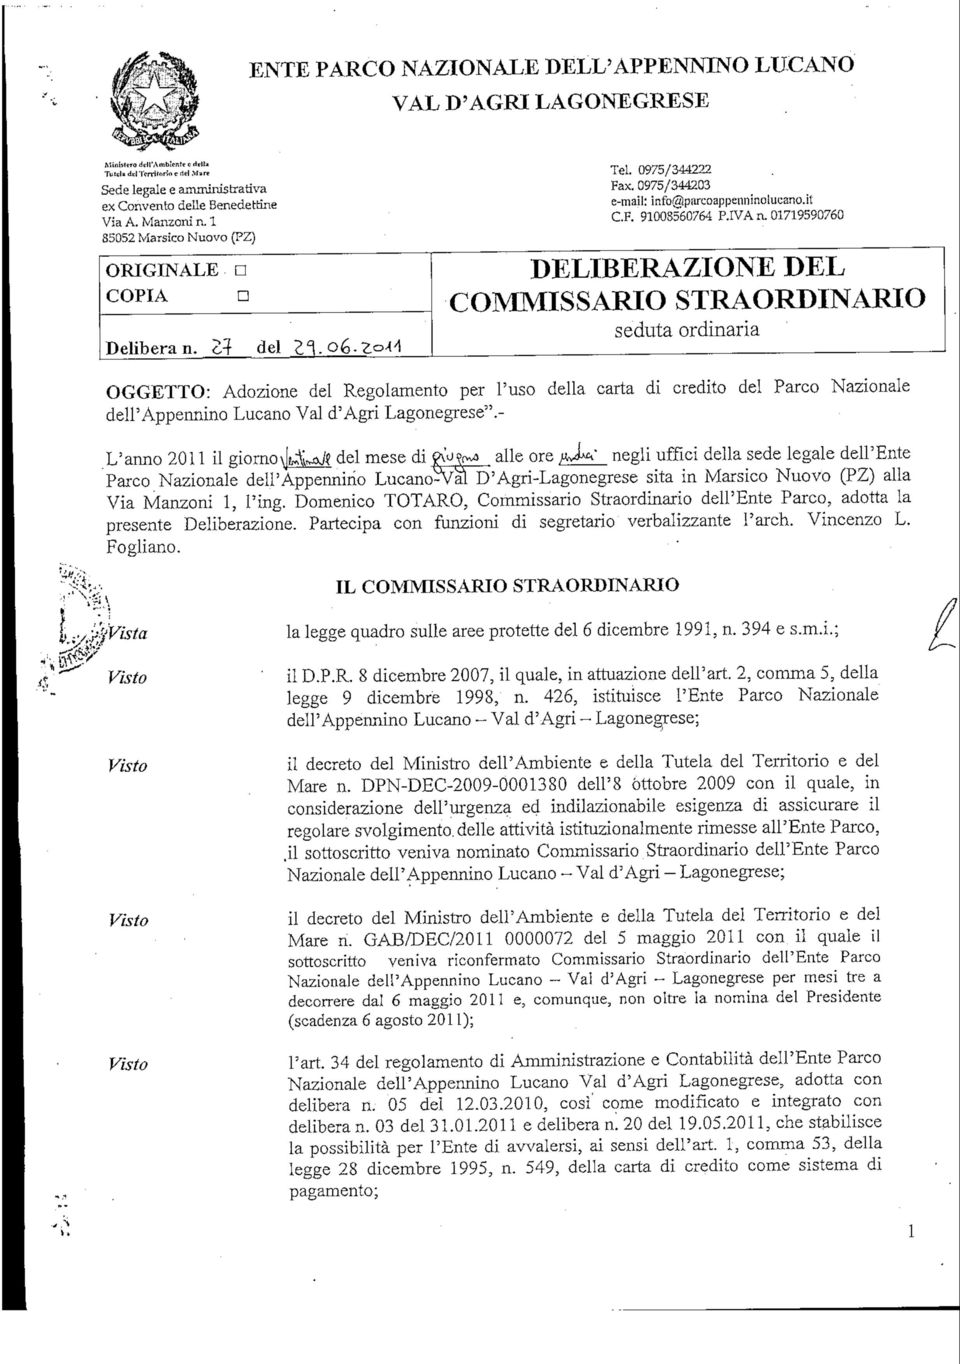 01719590760 DELIBERAZIONE DEL COMMISSARIO STRAORDINARIO seduta ordinarla OGGETTO: Adozione del Regolamento per l'uso della carta di credito del Parco Nazionale dell'appannino Lucano Val d'agri